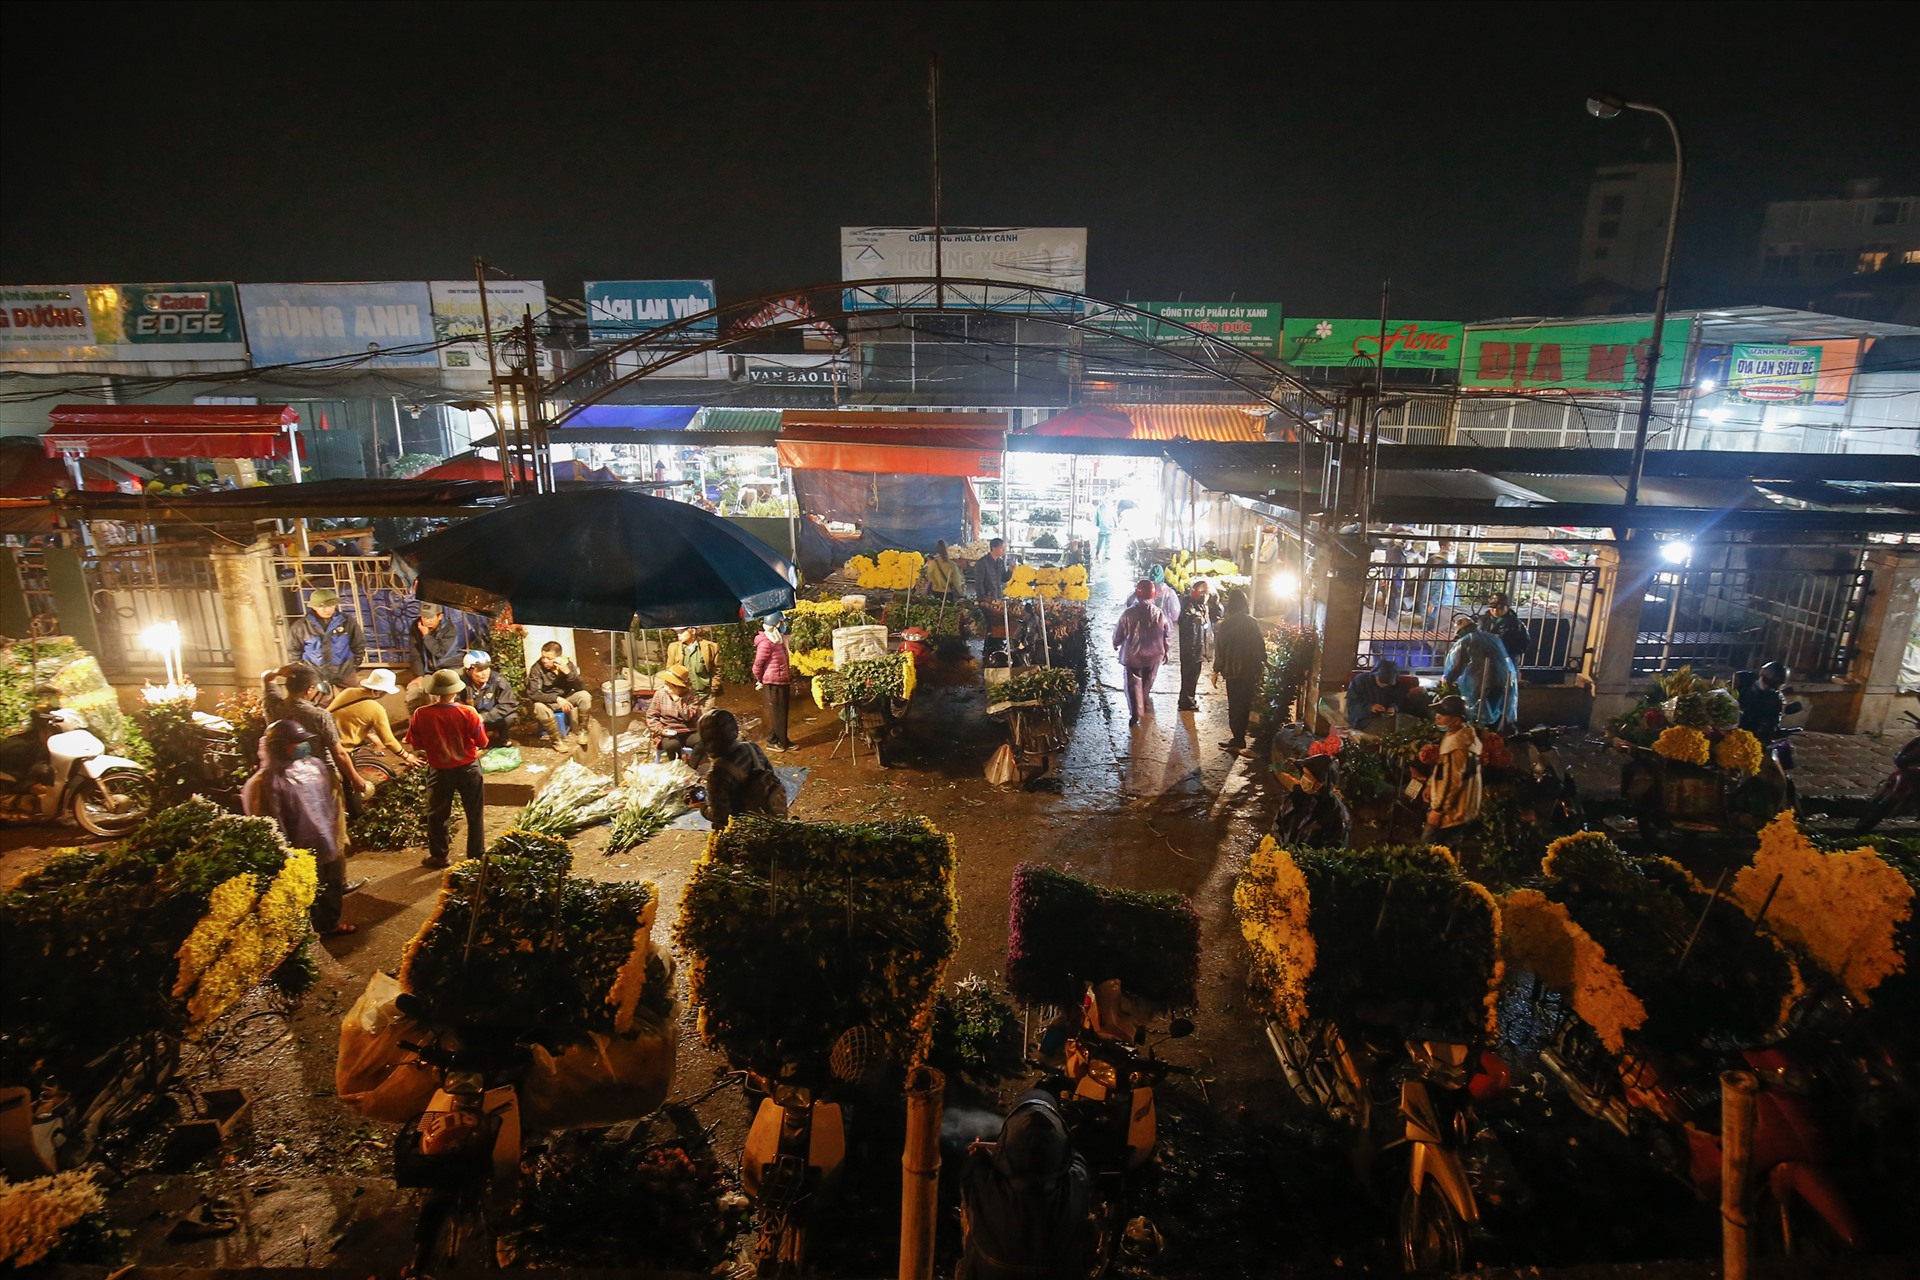 Chợ hoa Quảng Bá (phường Quảng An, quận Tây Hồ, Hà Nội) - khu chợ bán buôn hoa lớn nhất miền Bắc - luôn nhộn nhịp tất cả các ngày từ 3-4h sáng tới gần trưa mỗi ngày. Ảnh: Bằng Trần